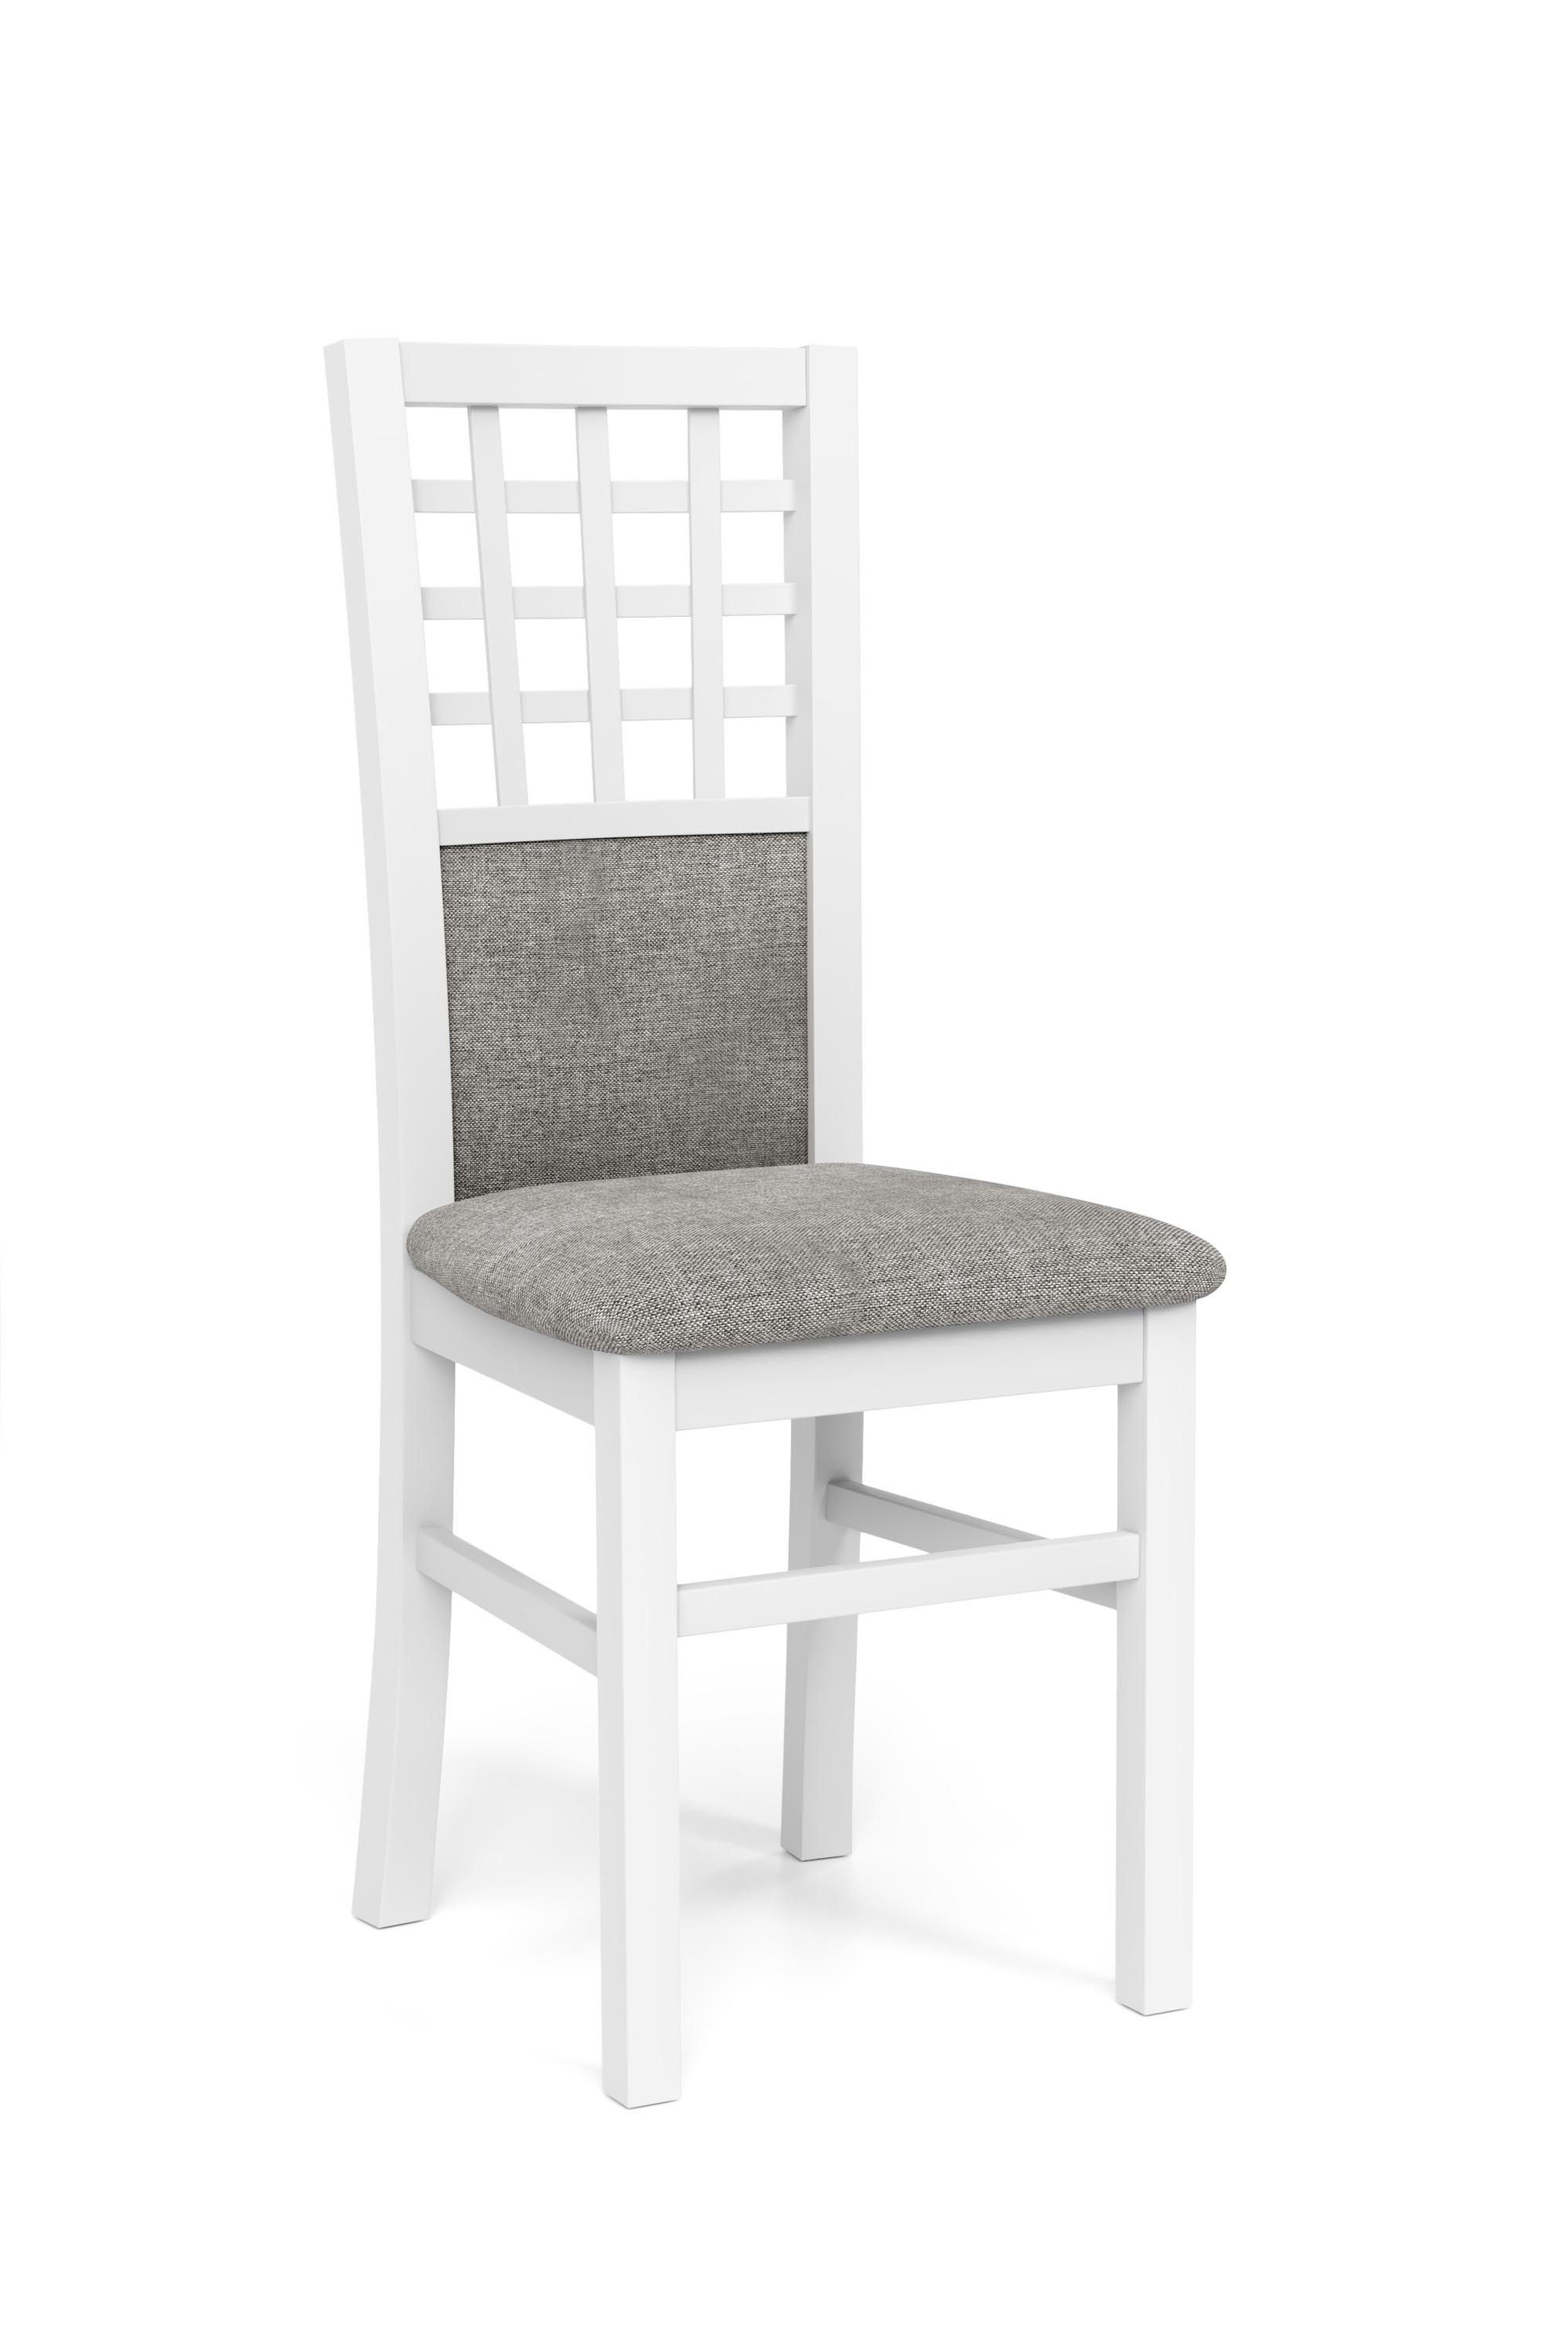 GERARD3 krzesło biały / tap: Inari 91